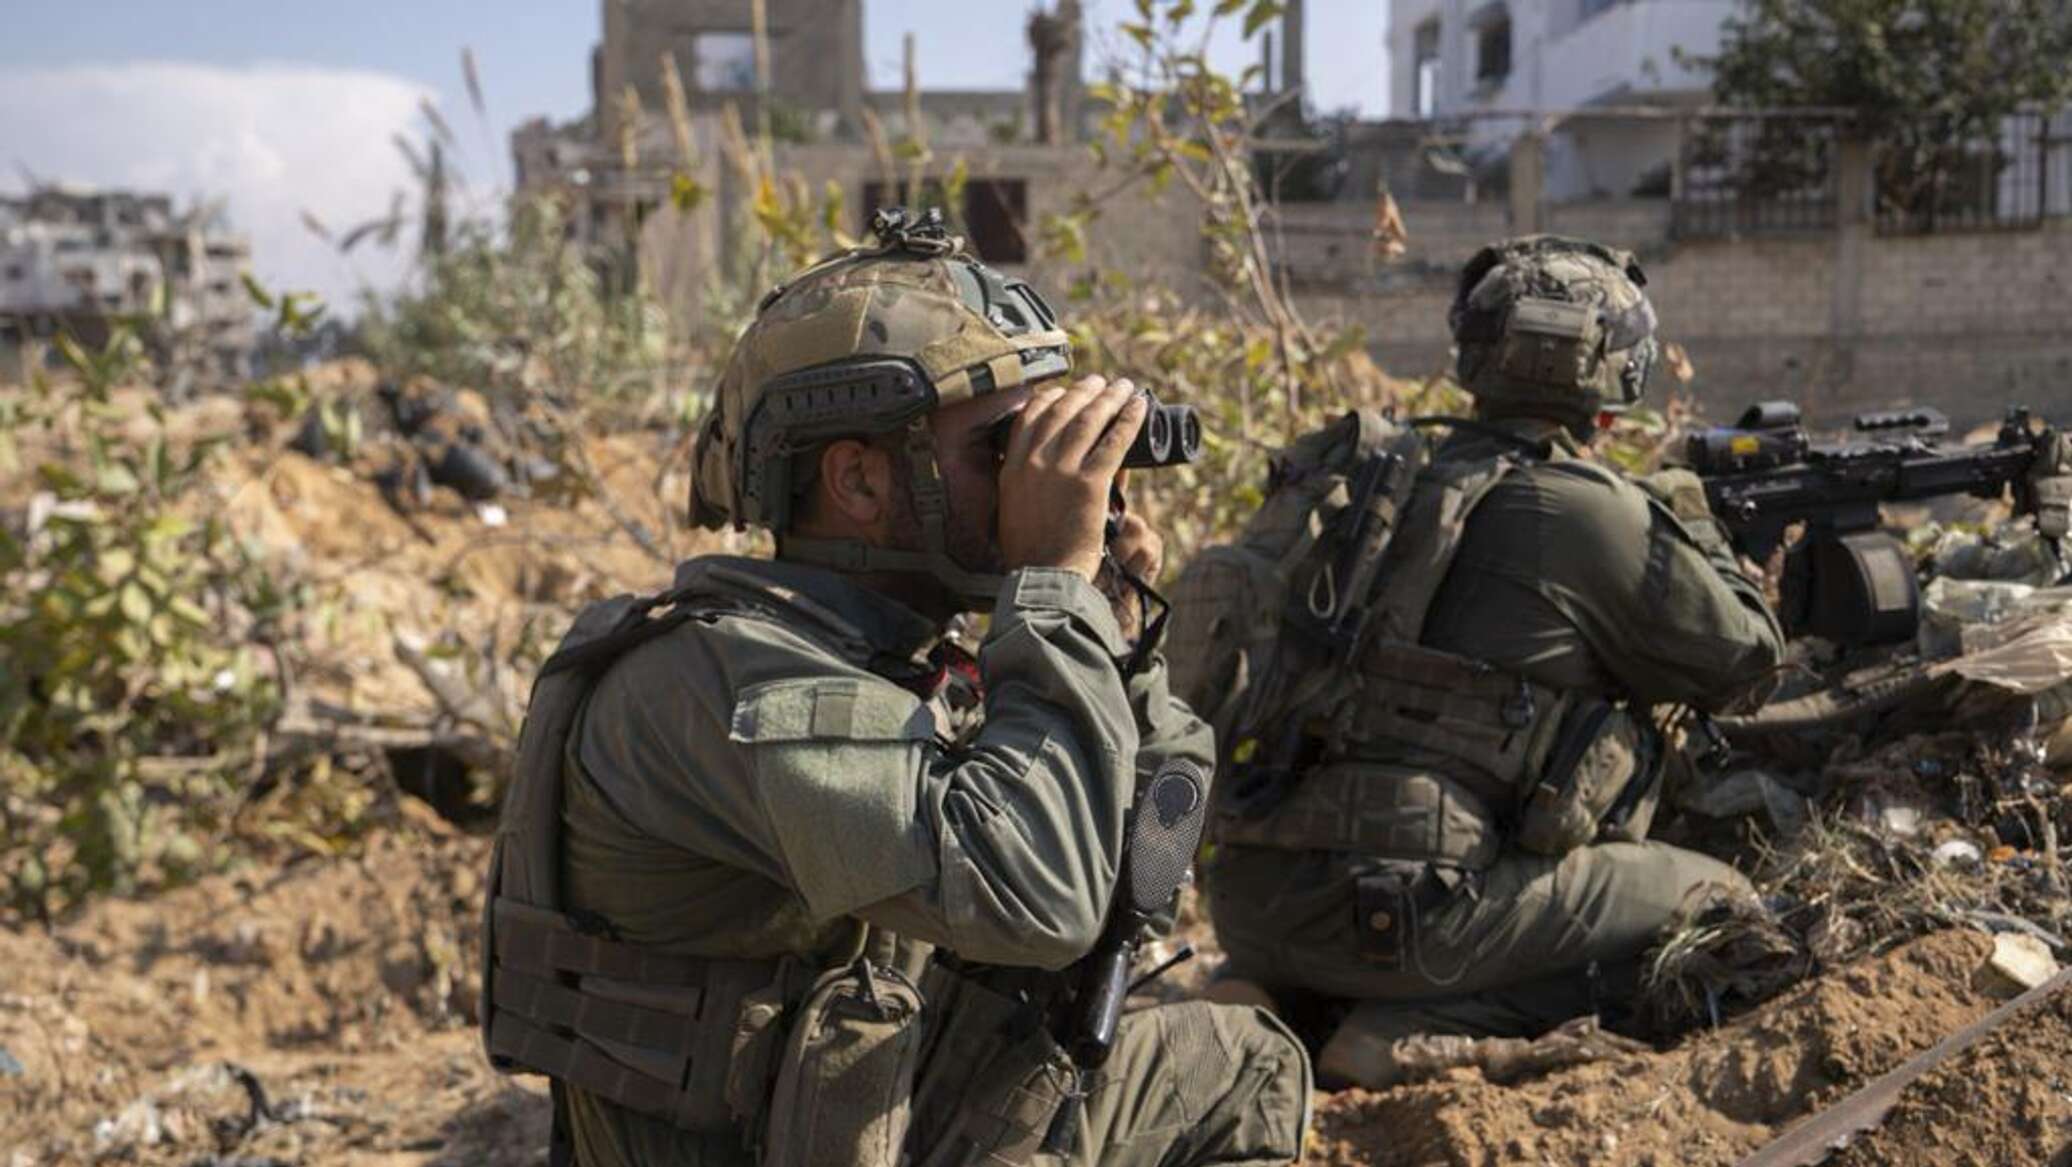 "القسام" تعلن استهداف قوة إسرائيلية خاصة قوامها 40 جنديا